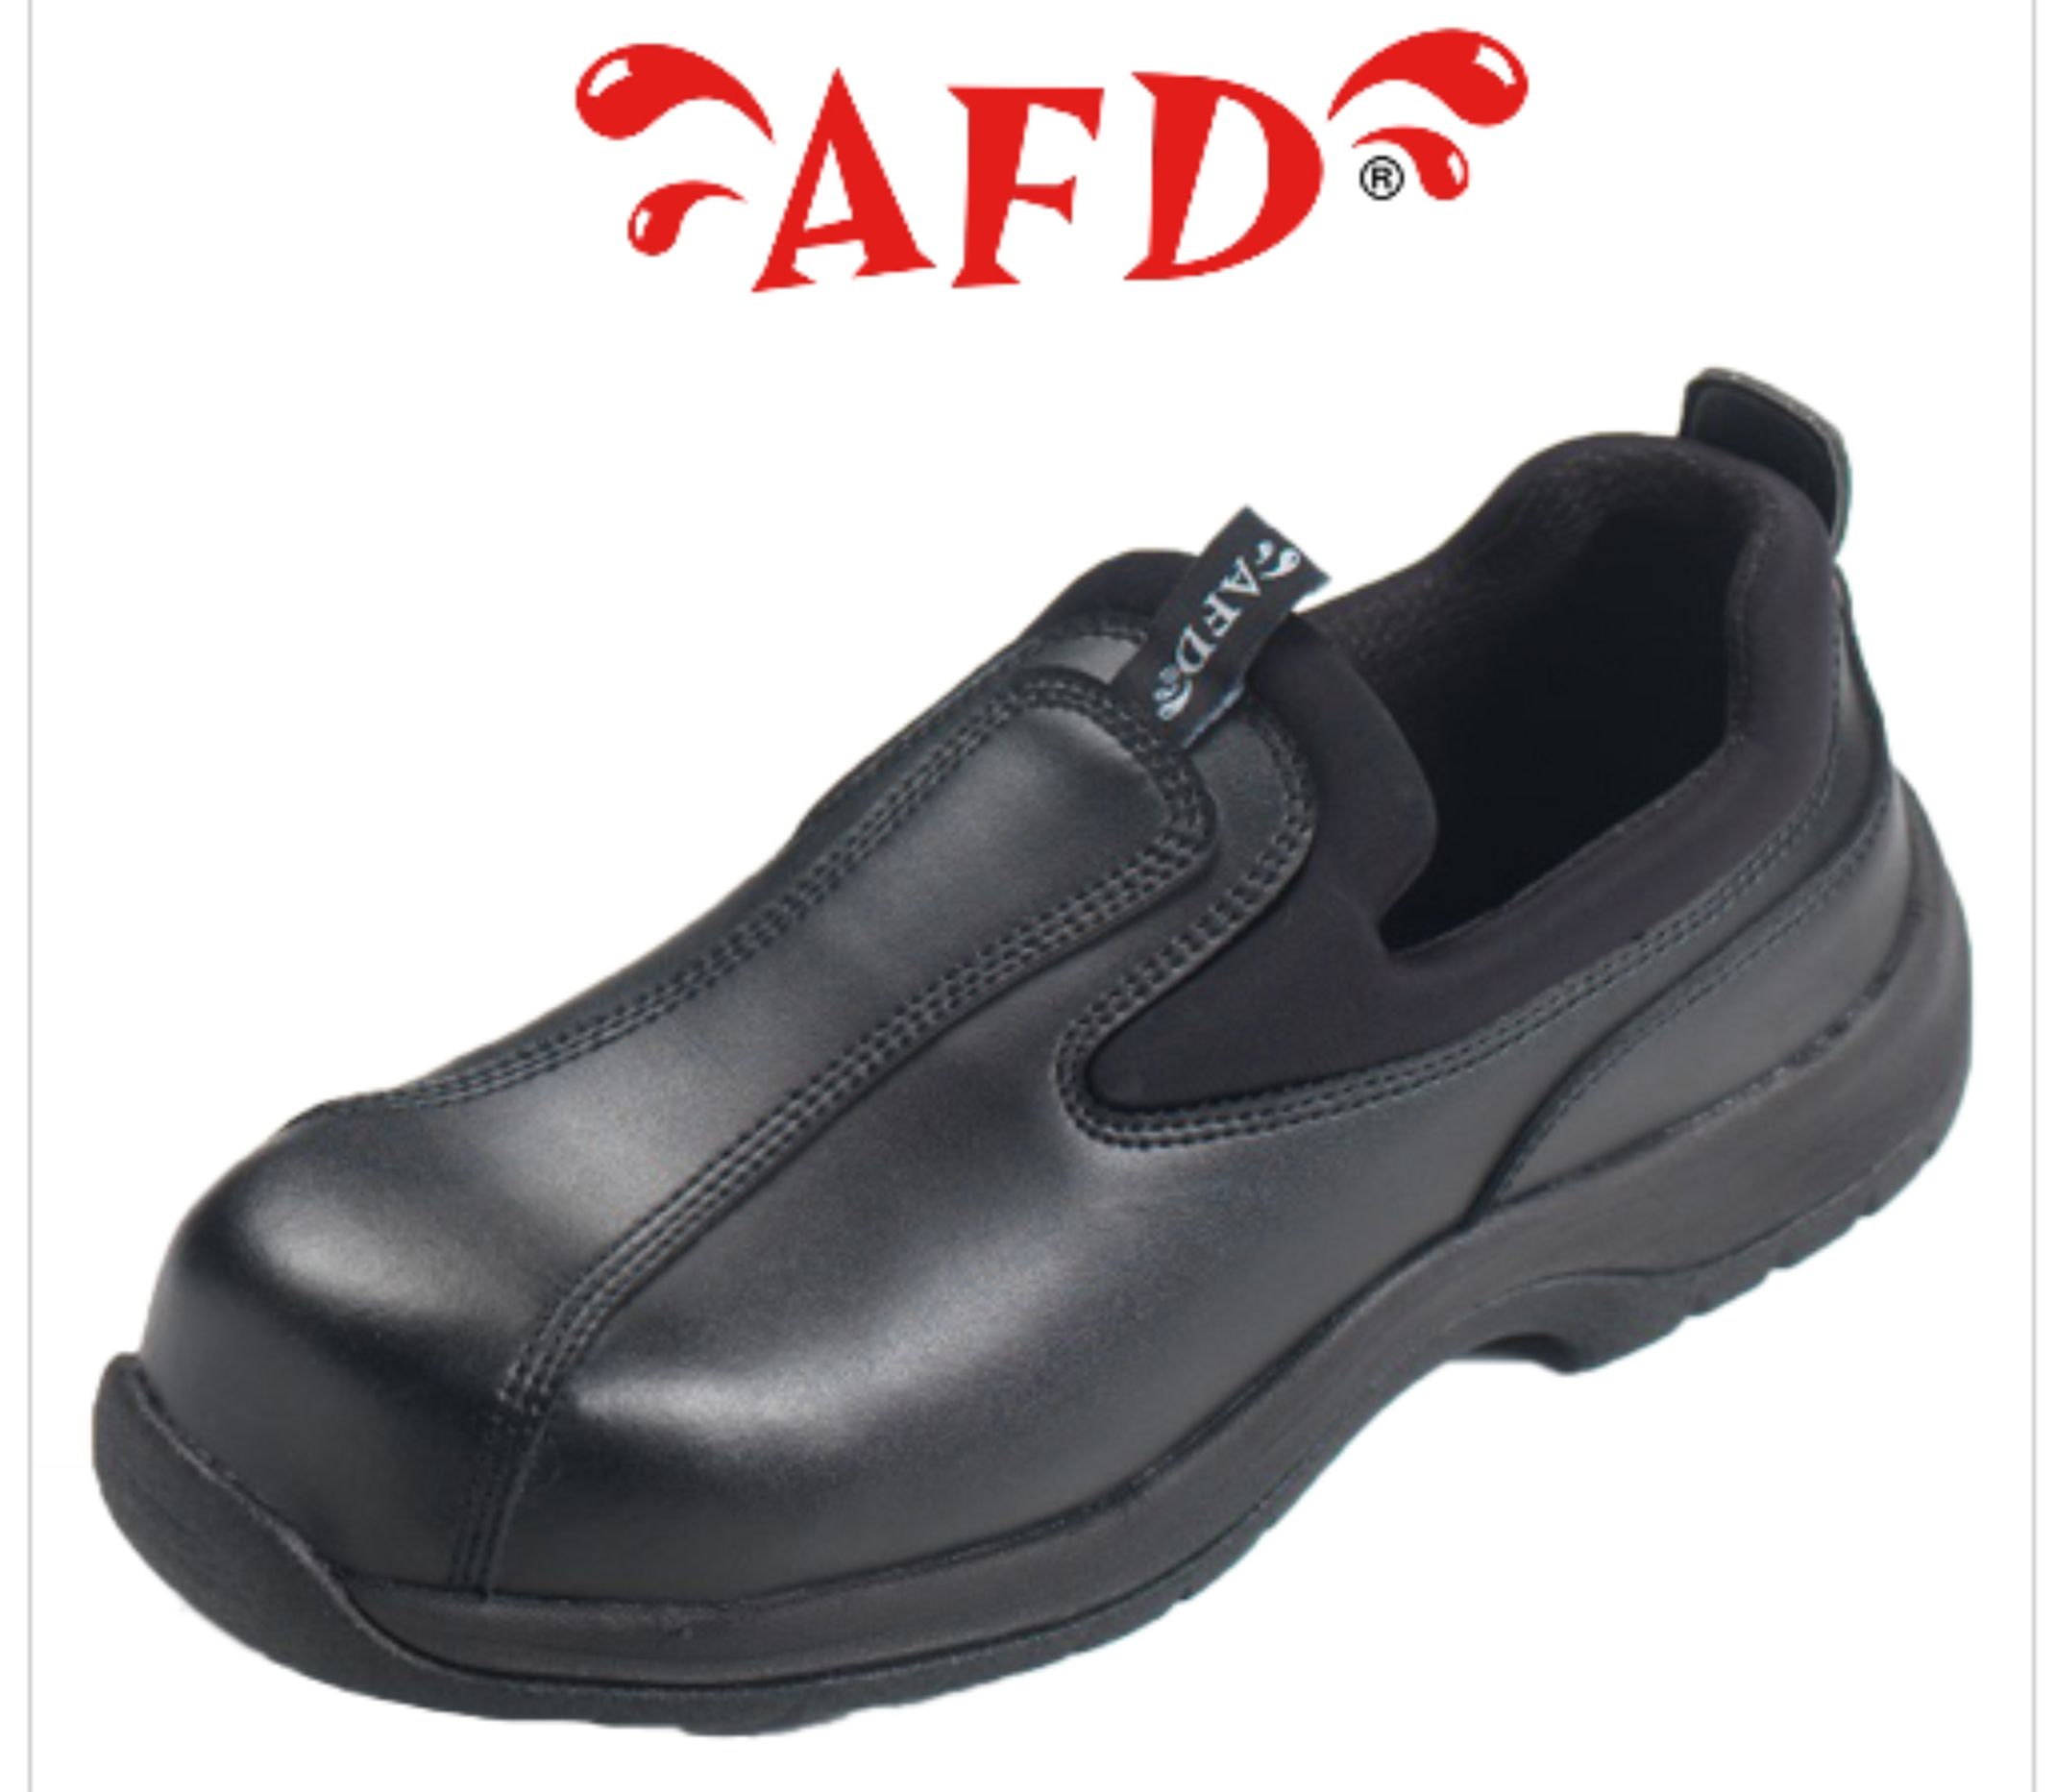 DK123 AFD Black Slip On Shoe - Click Image to Close